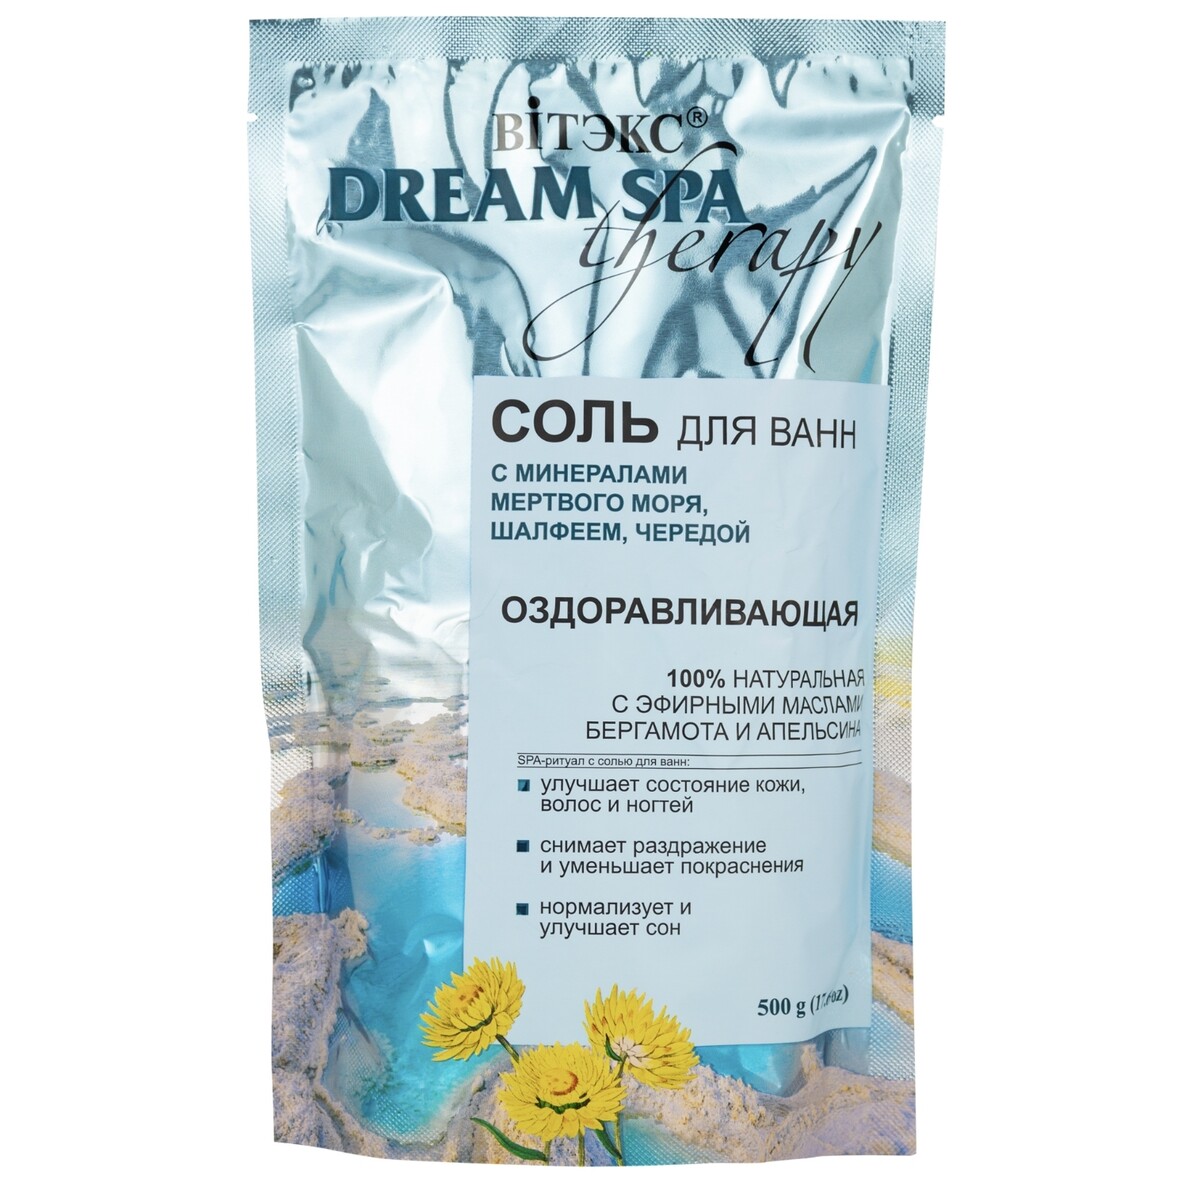 Dream spa therapy соль для ванн оздоравливающая с солью мертв.моря, шалф-м,черед.и аромамасл.,500 г целебная натуротерапия